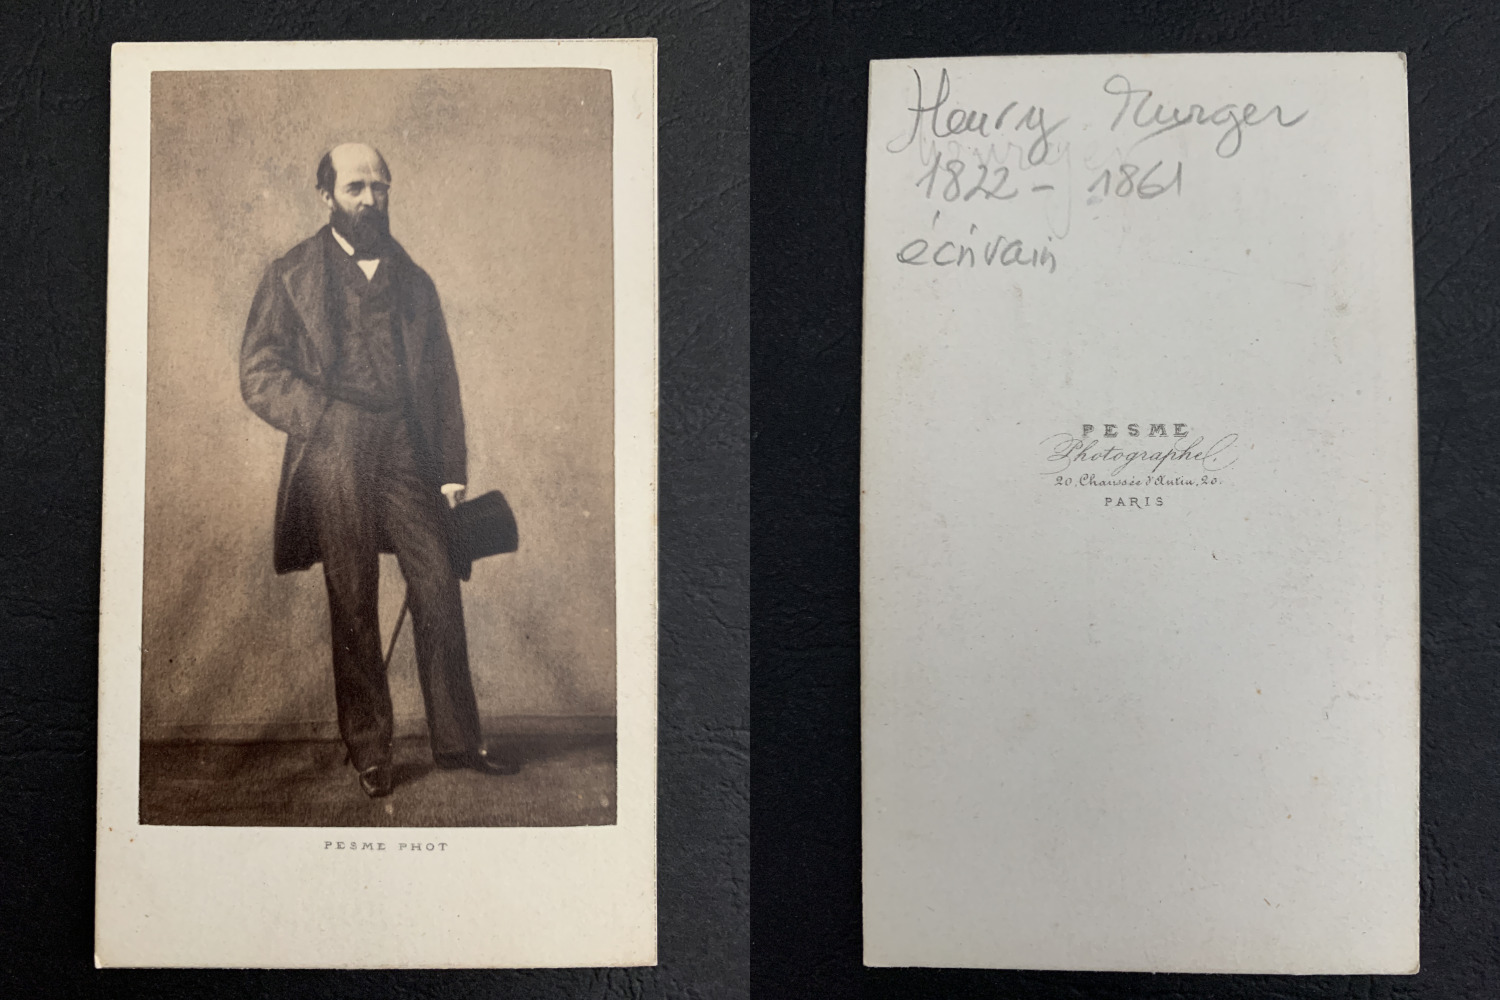 Pesmé, Paris, Henry Murger Vintage Business Card, CDV. Henry Murger is an e